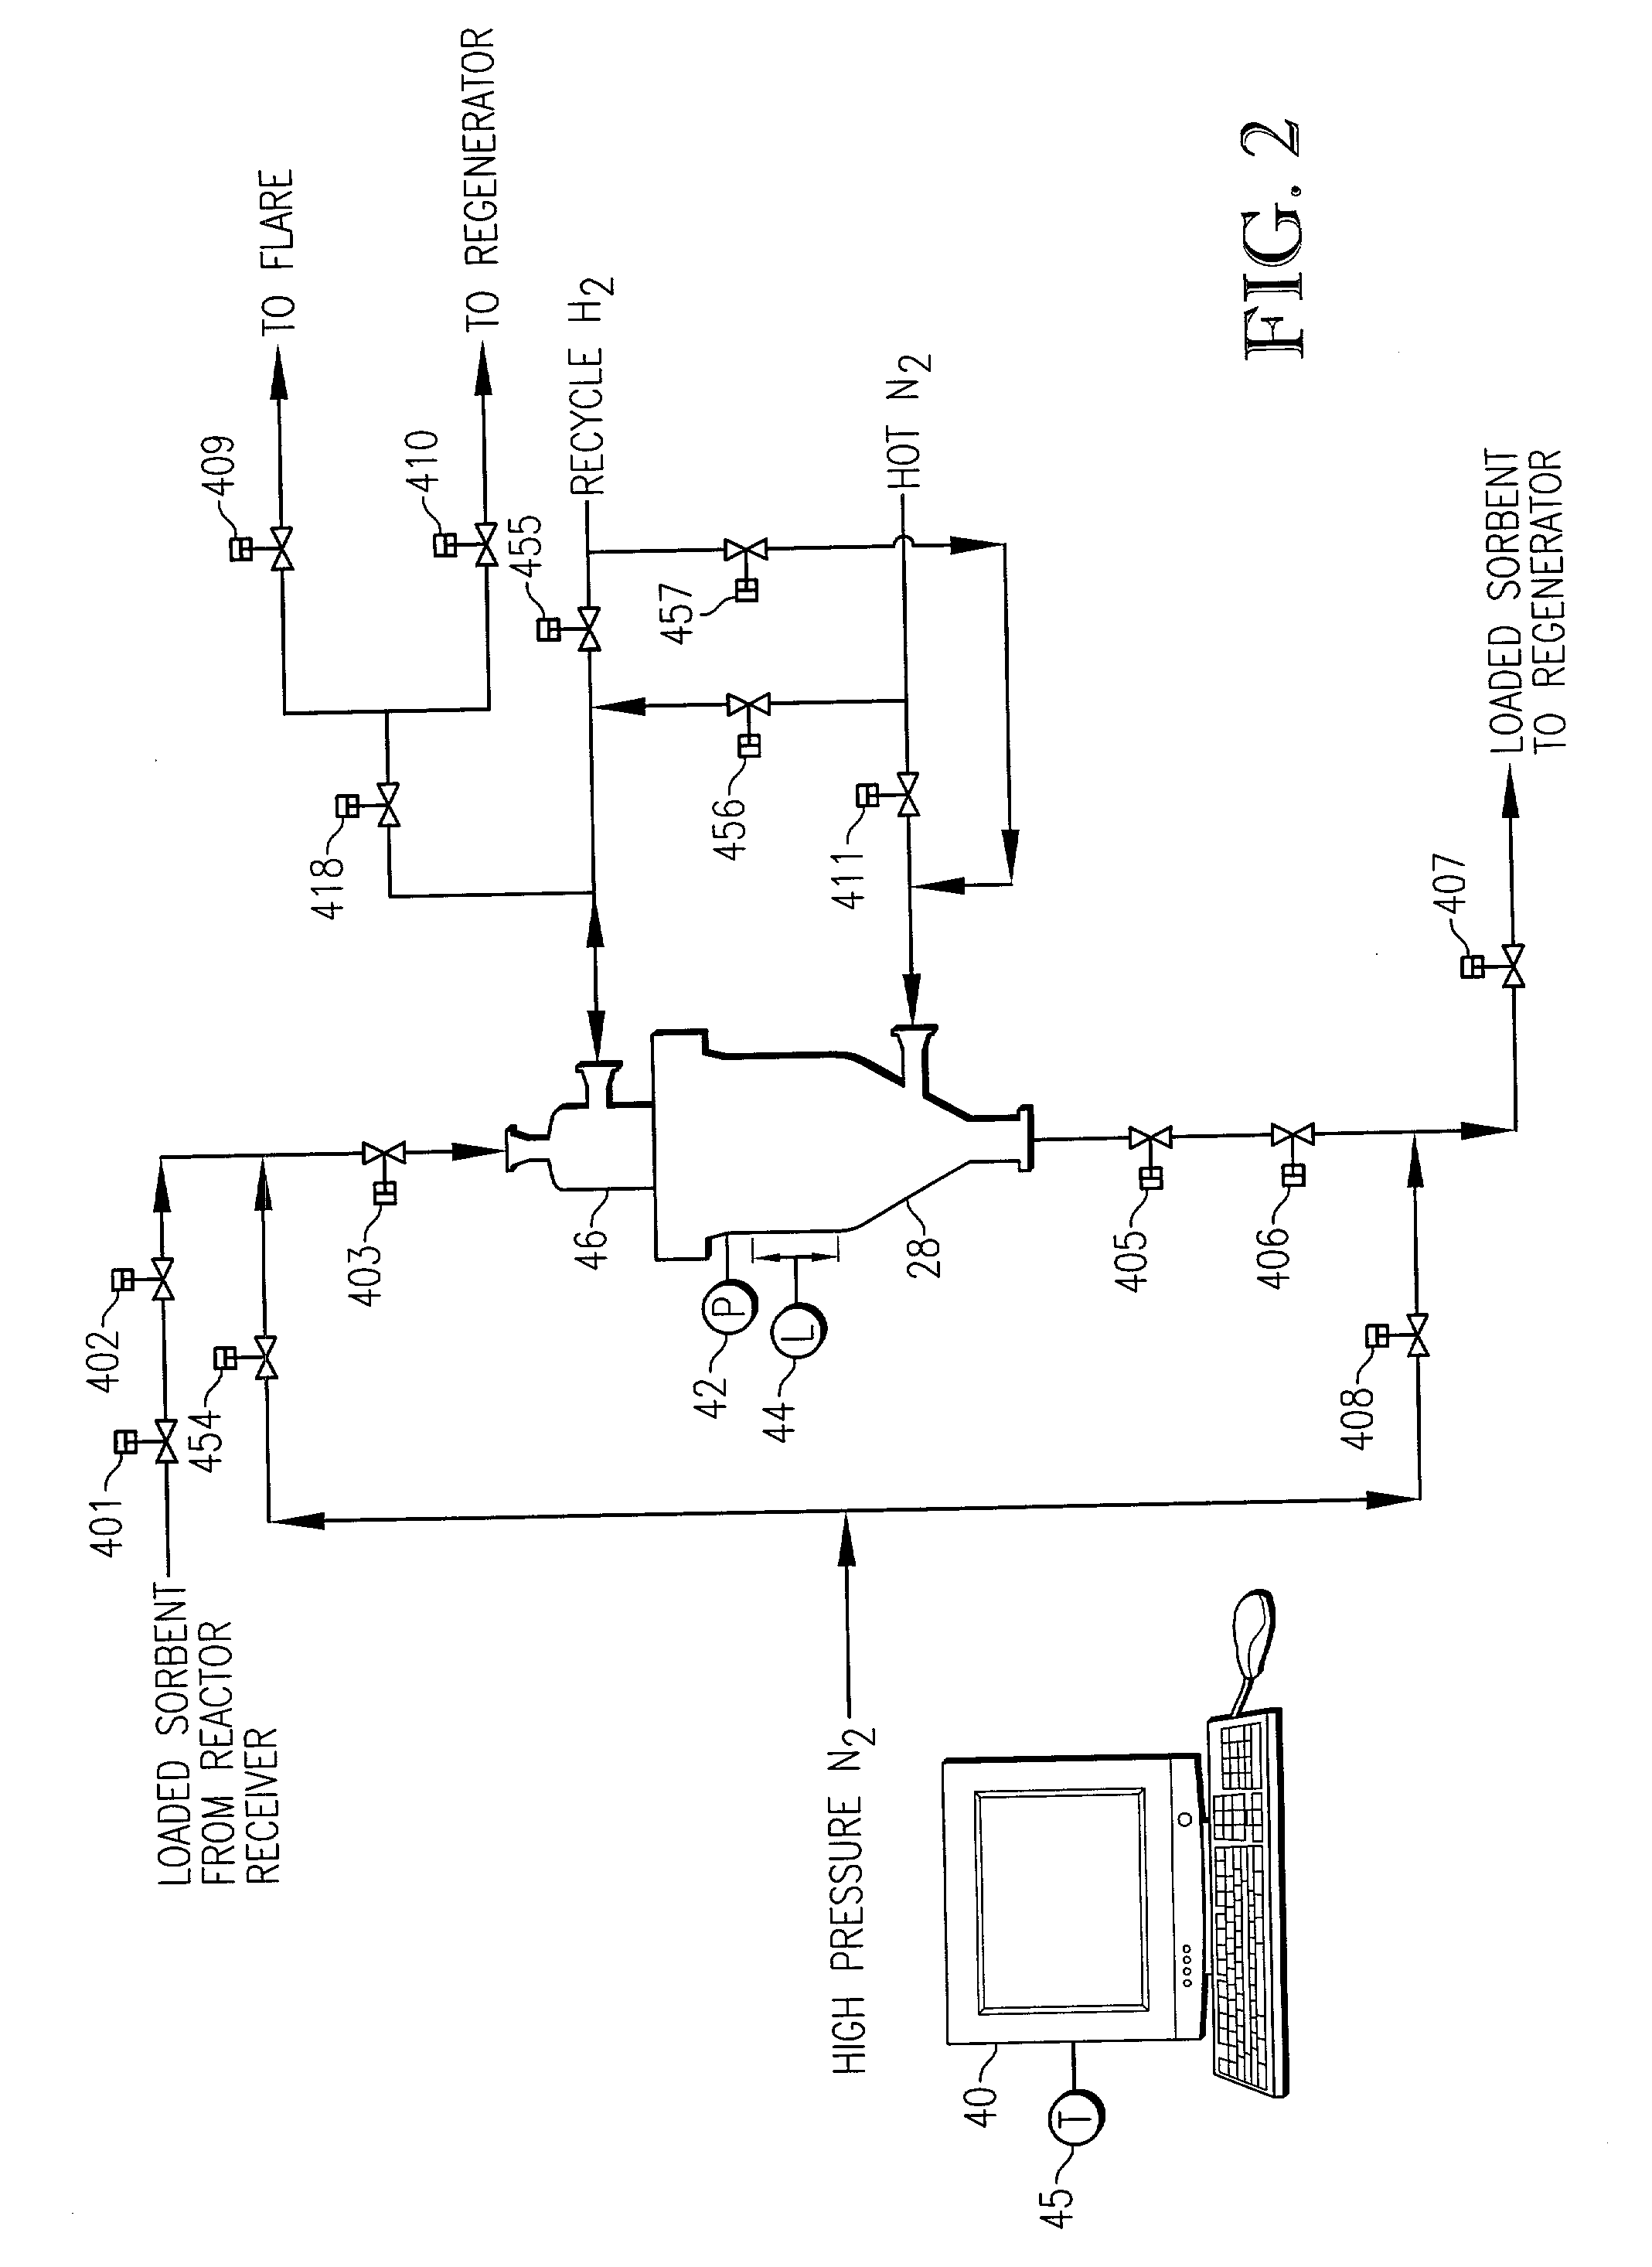 Desulfurization system with novel sorbent transfer mechanism